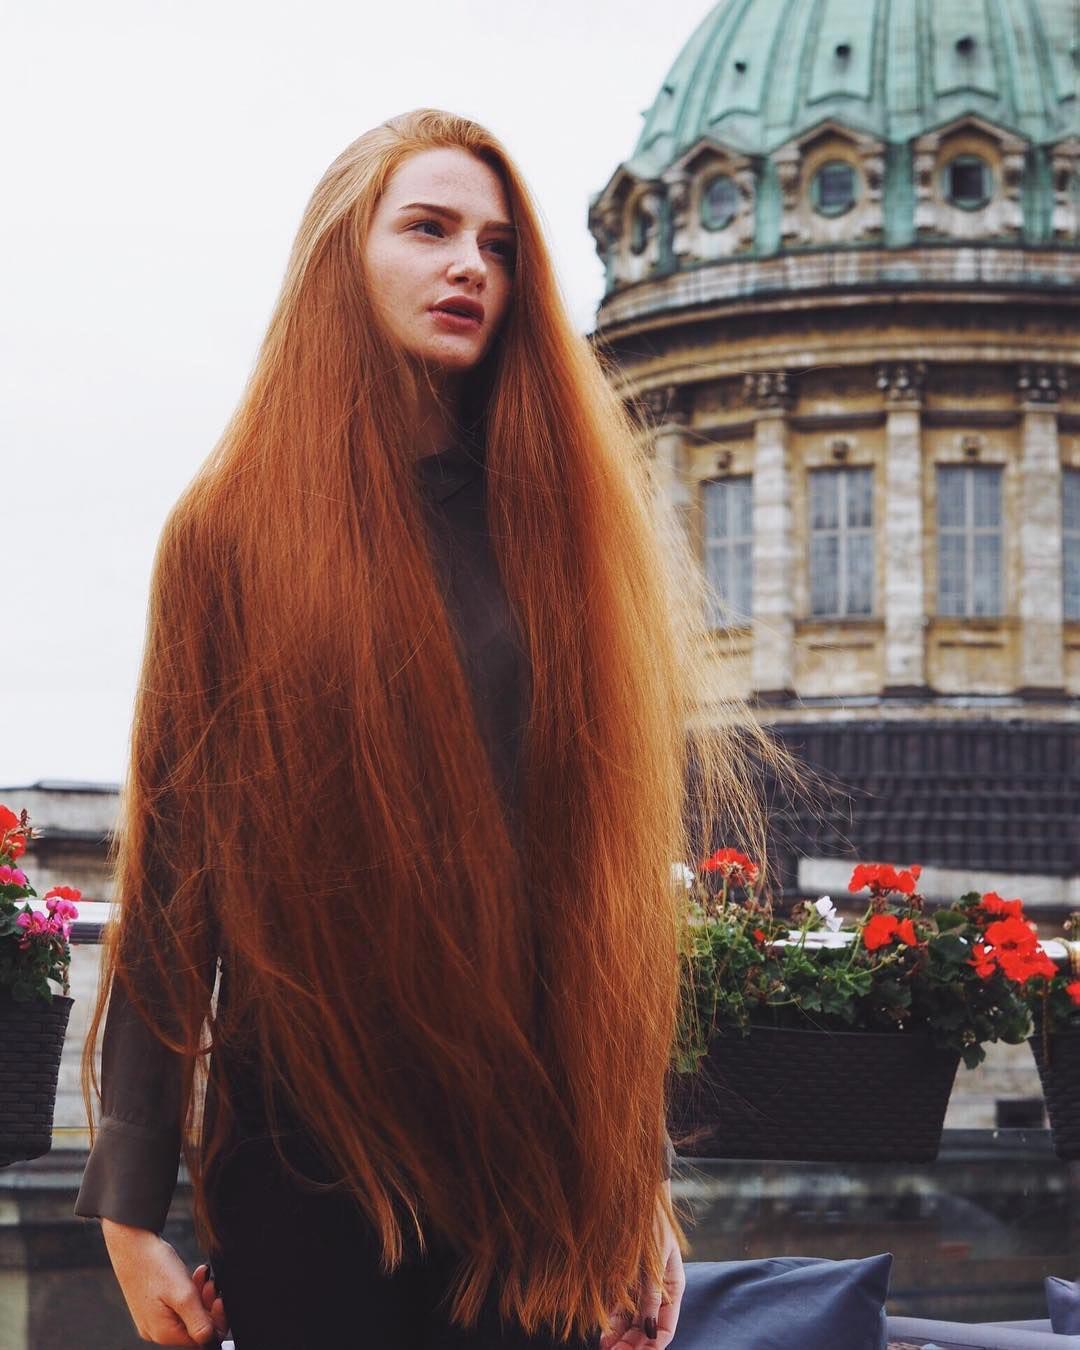 Анастасия Сидорова - русская Рапунцель с роскошными рыжимы волосами, победи...